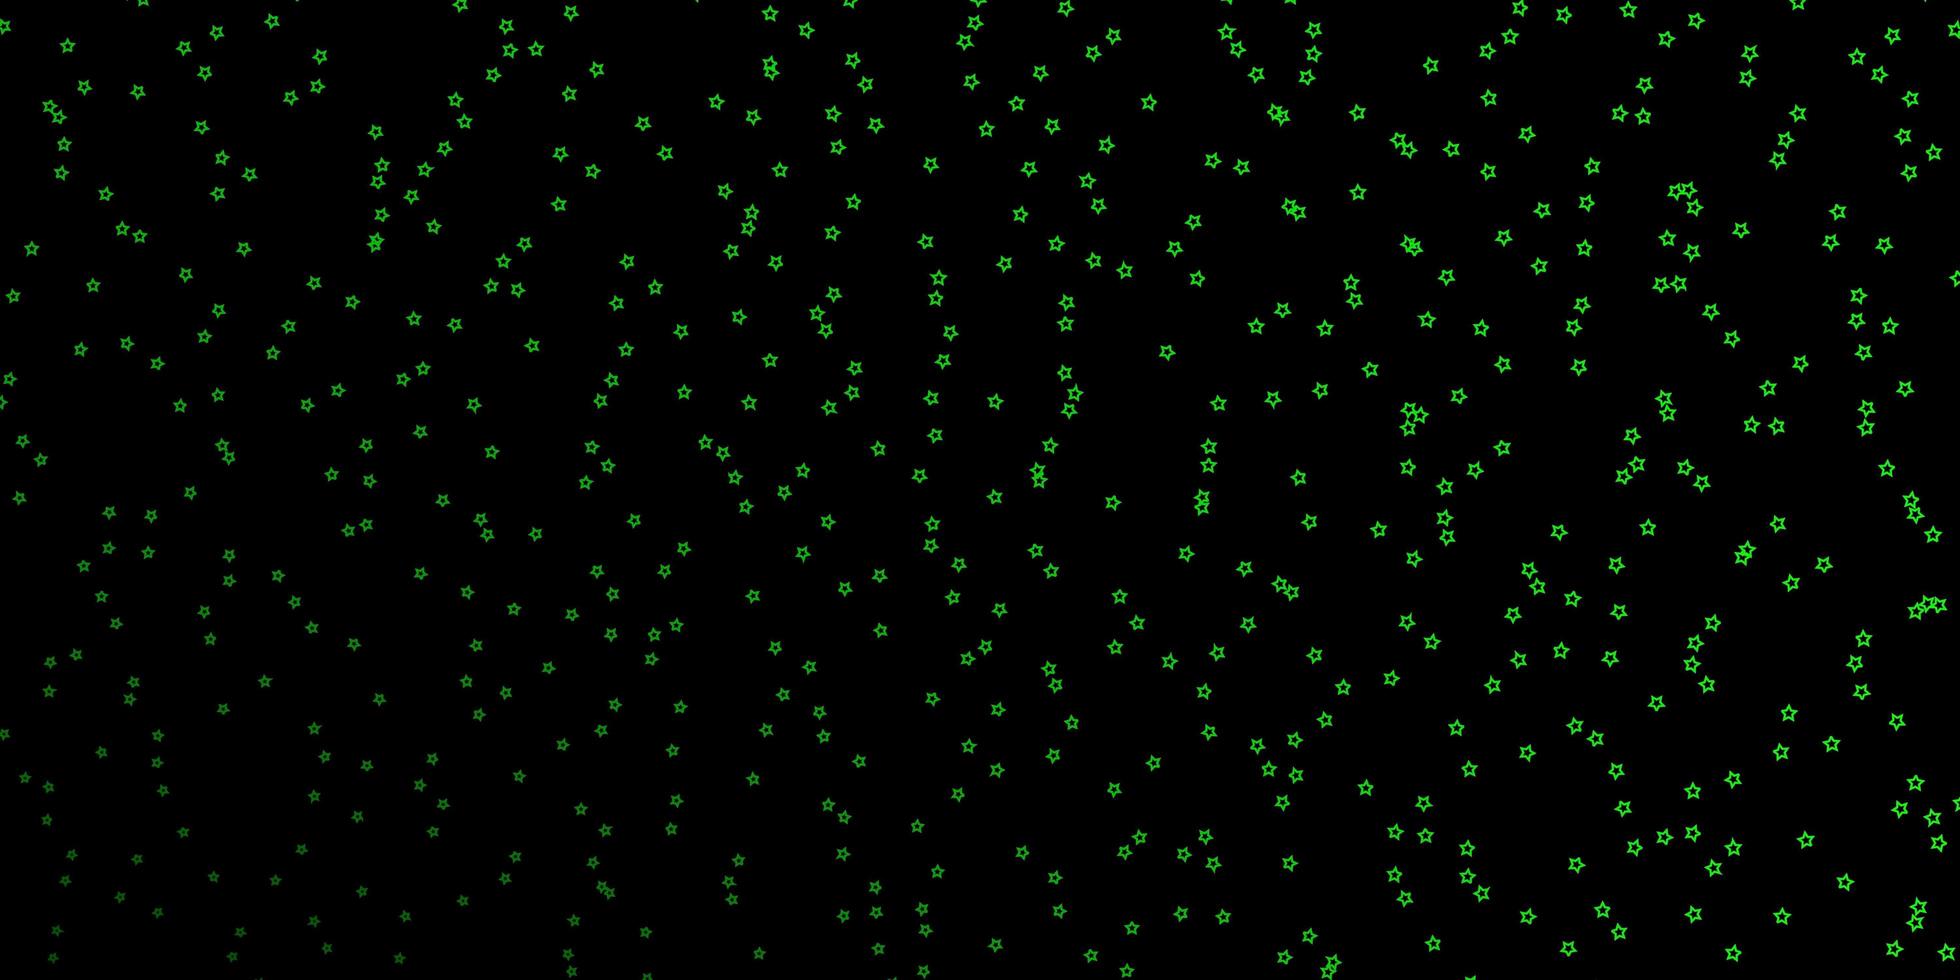 textura de vector verde oscuro con hermosas estrellas.